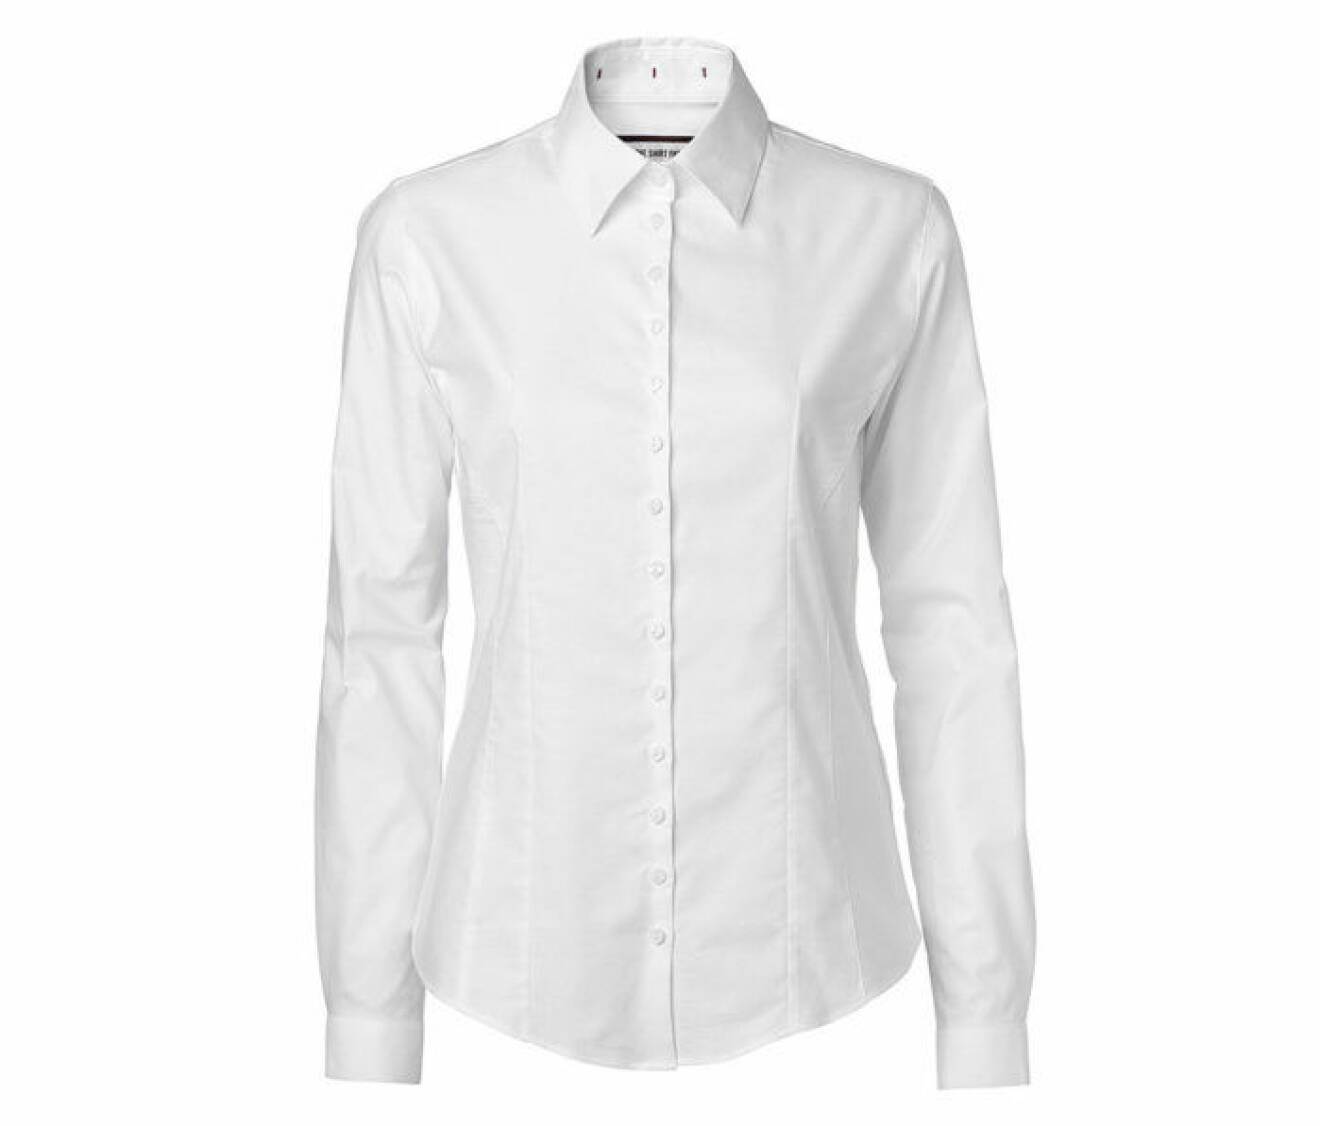 En vit skjorta. 